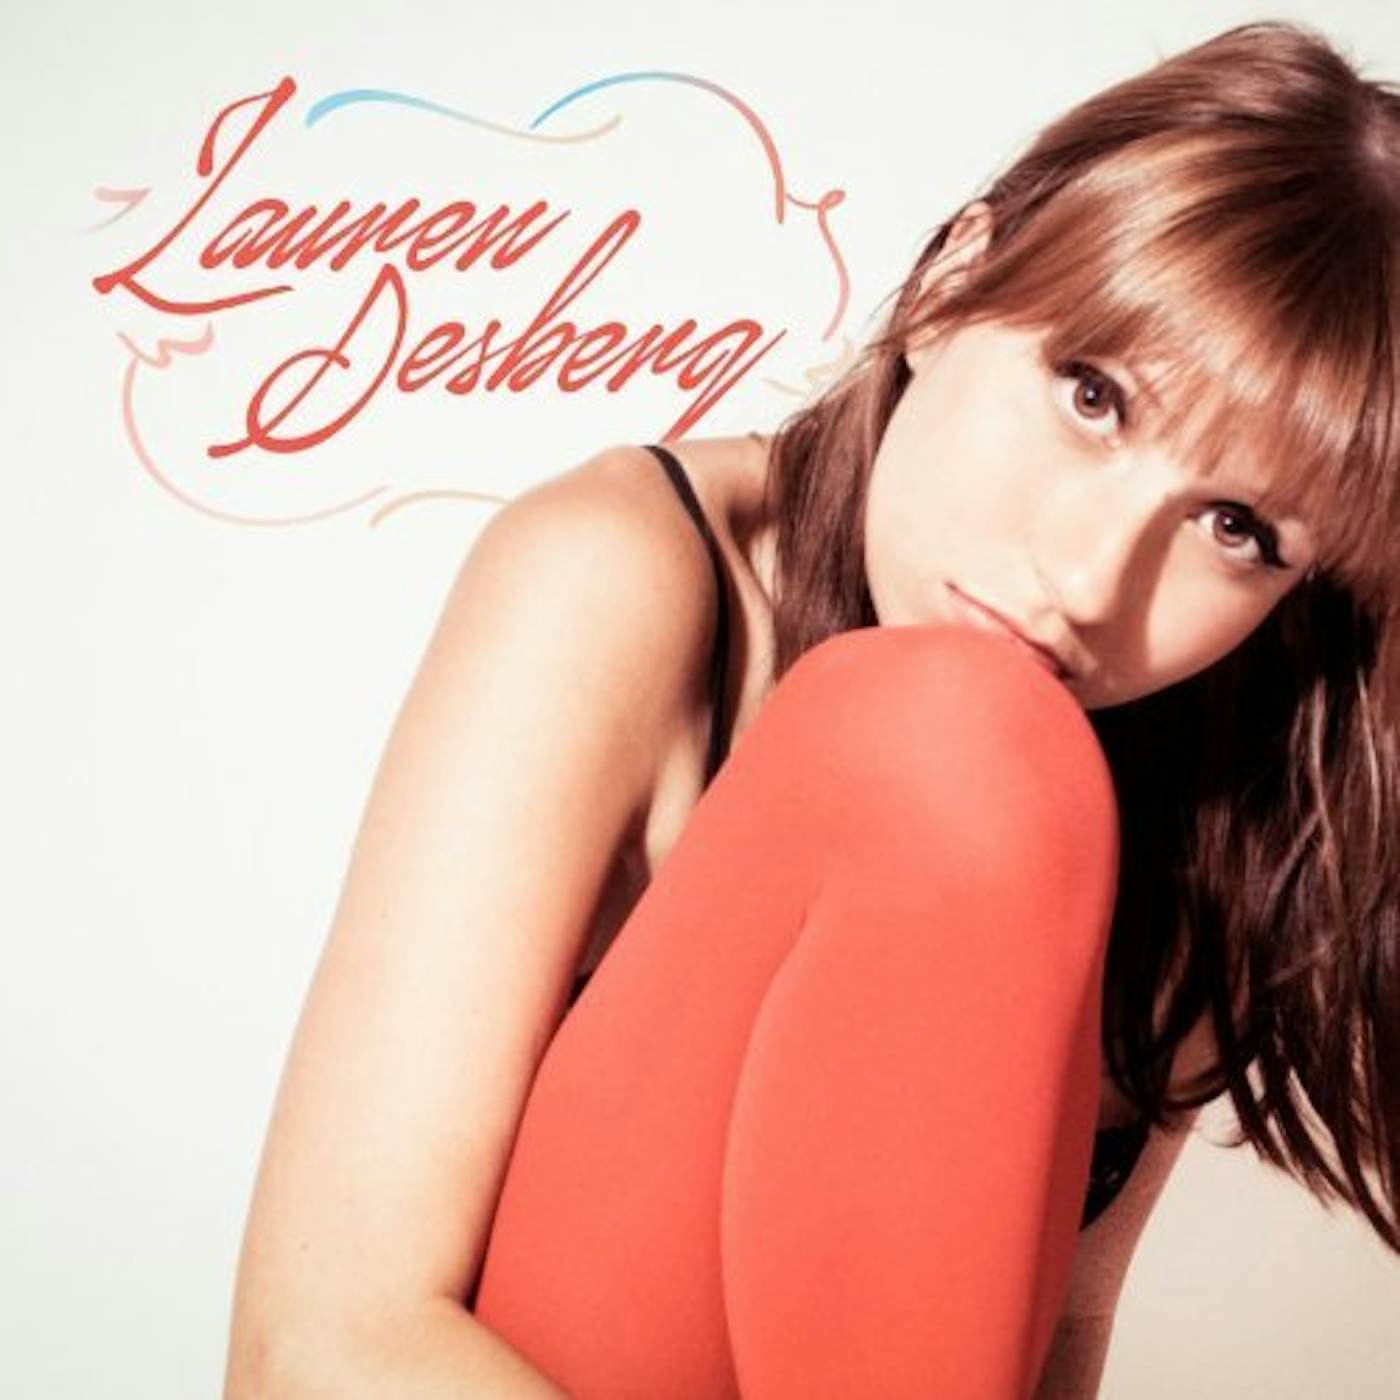 Lauren Desberg SIDEWAY CD